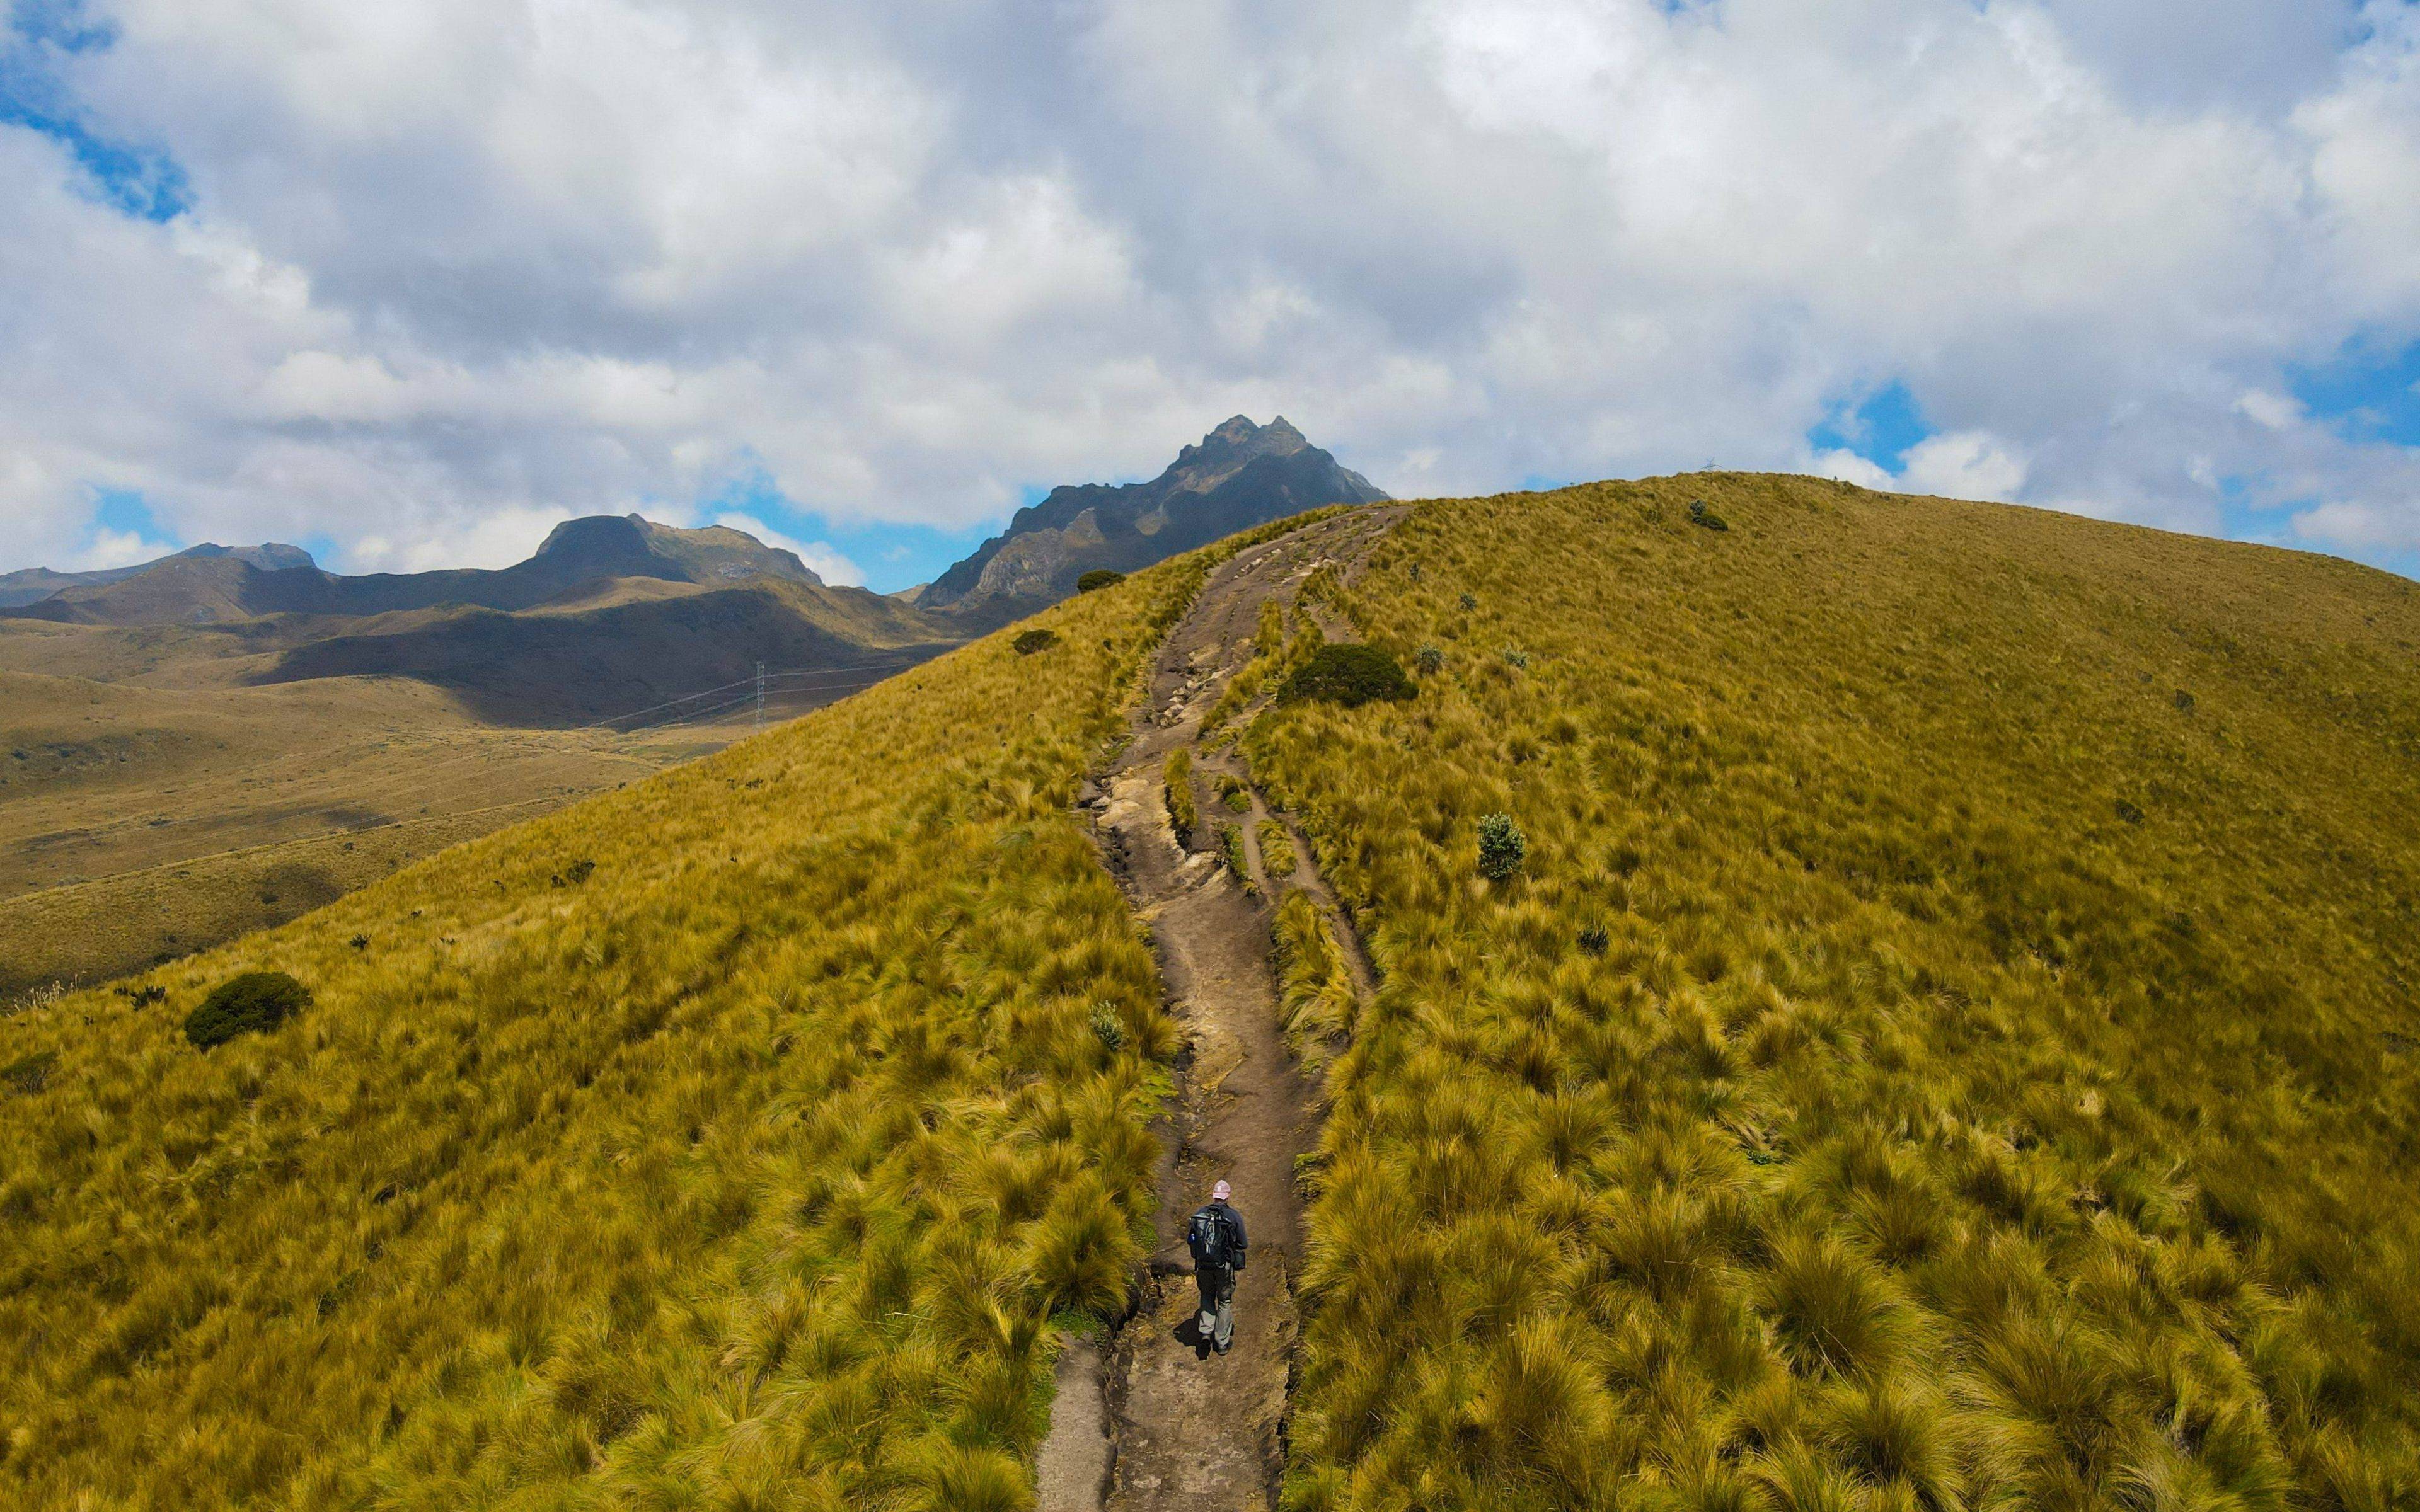 De westelijke bergketen: Guagua Pichincha